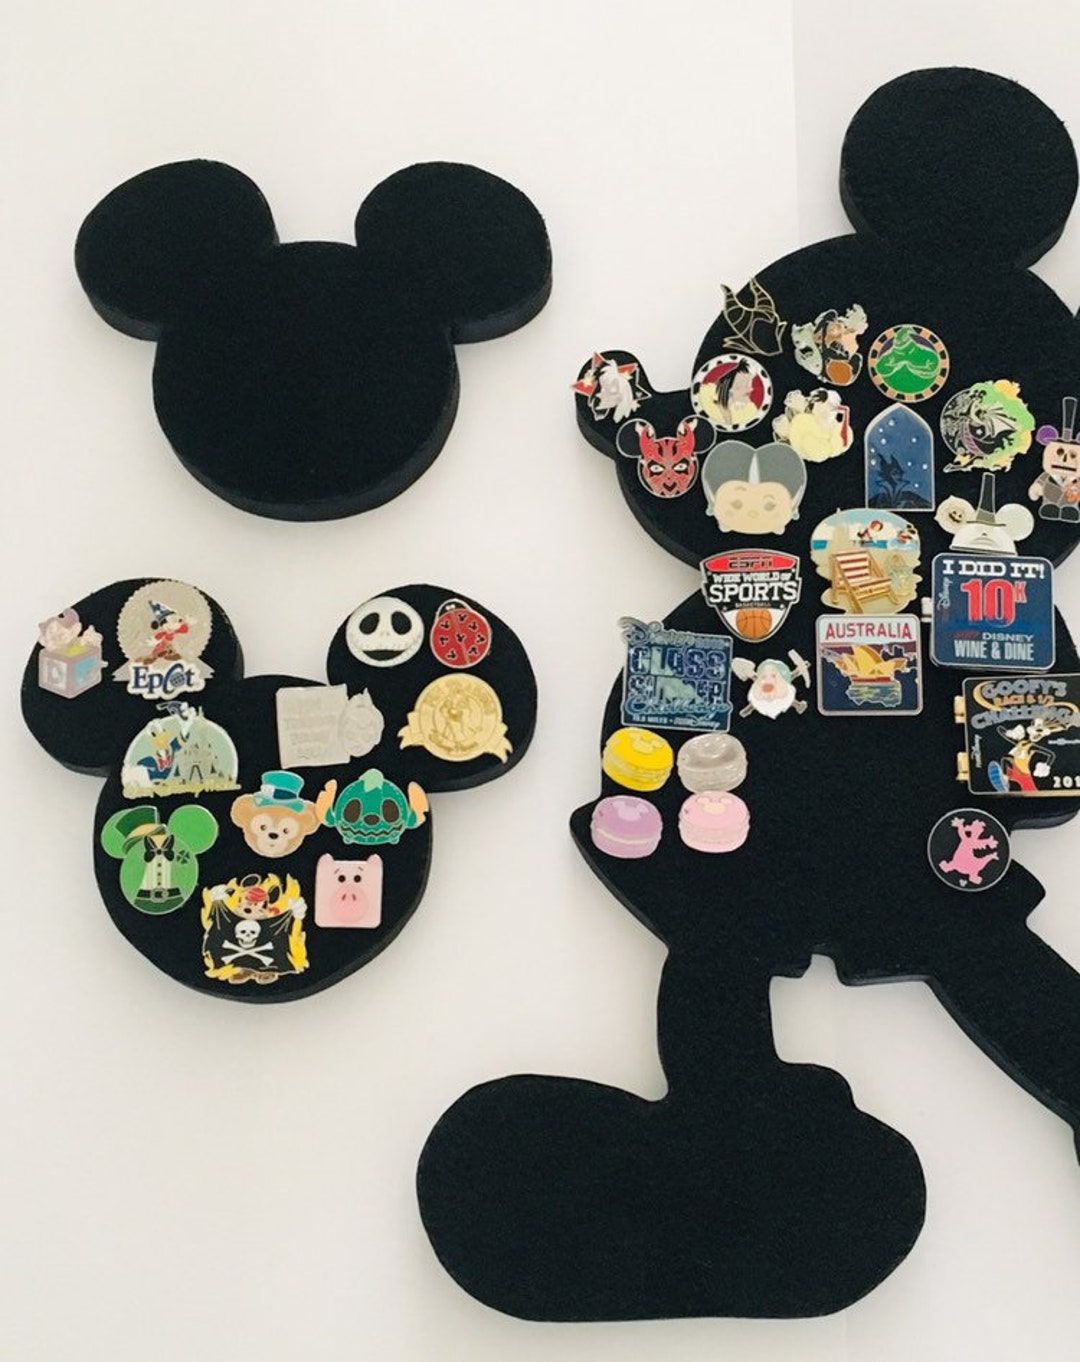 New Mickey Mouse Pin Trading Messenger Bag at Disney Parks - Disney Pins  Blog